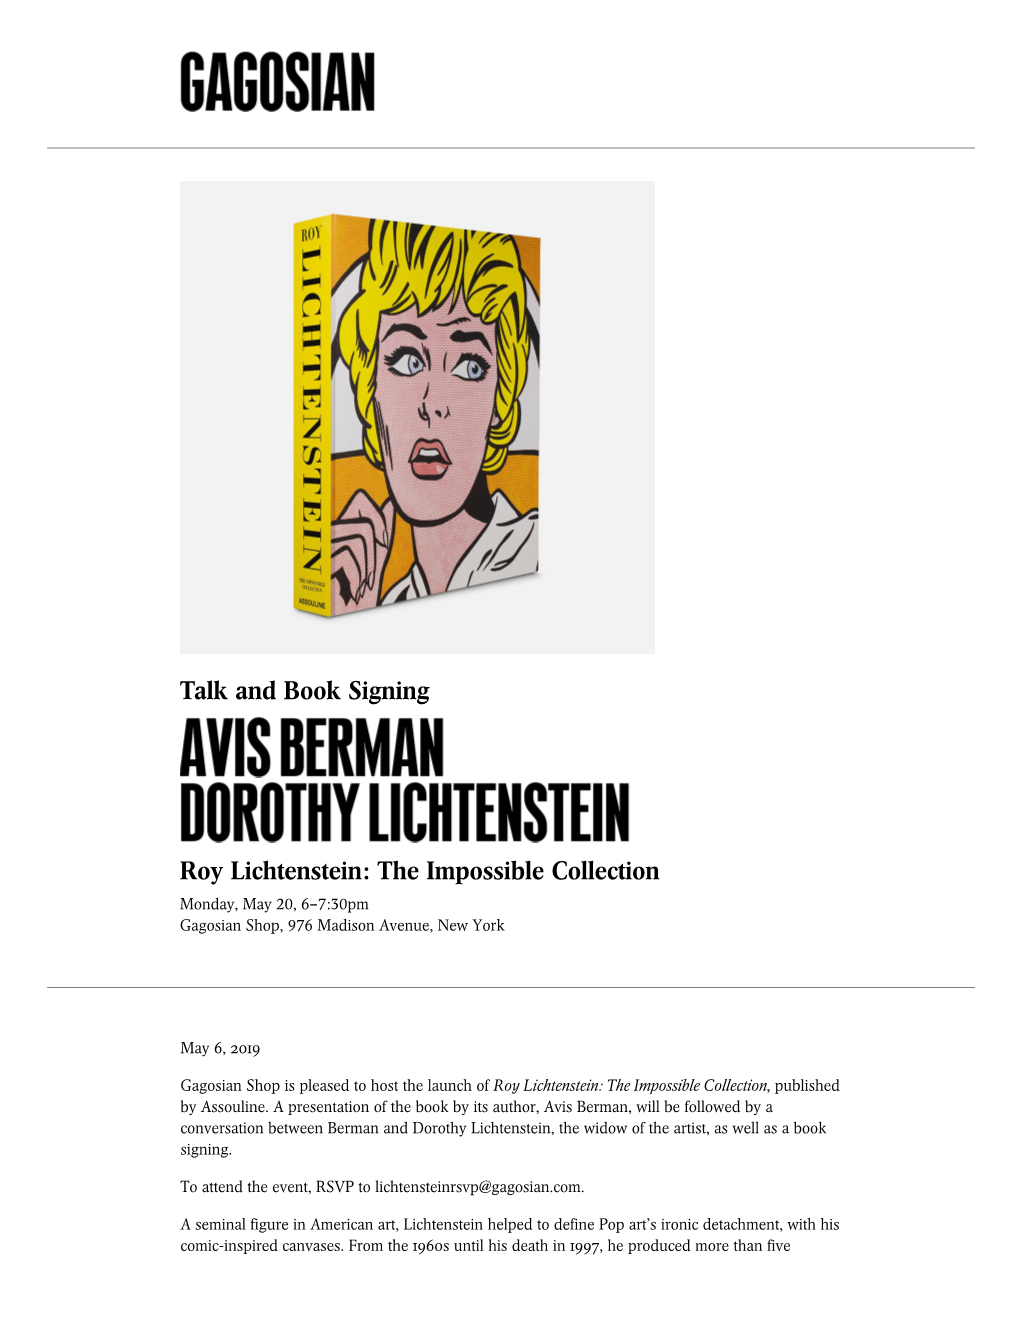 Talk and Book Signing Roy Lichtenstein